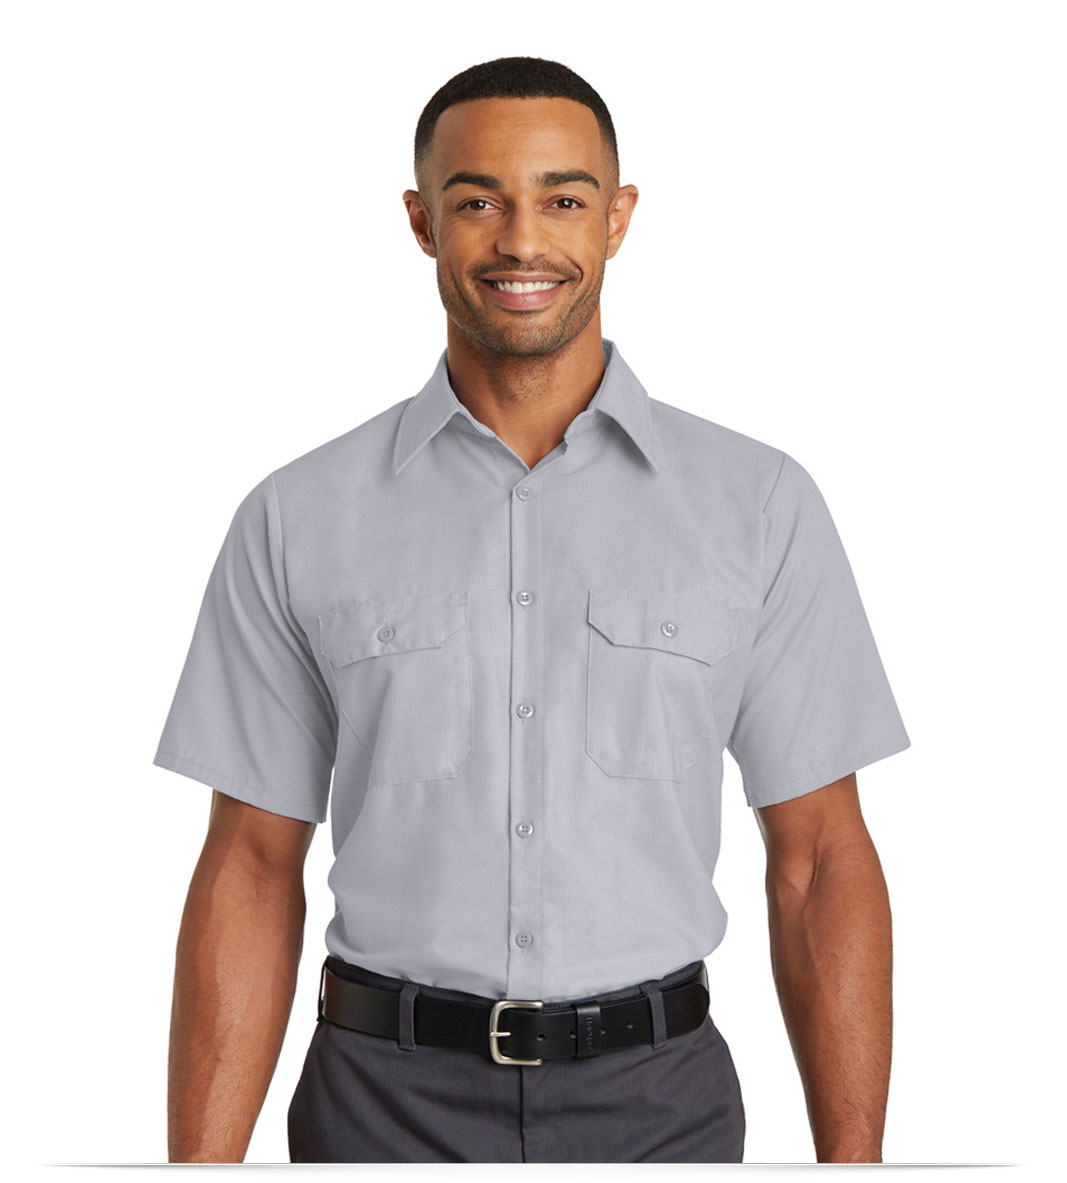 uniform work shirt